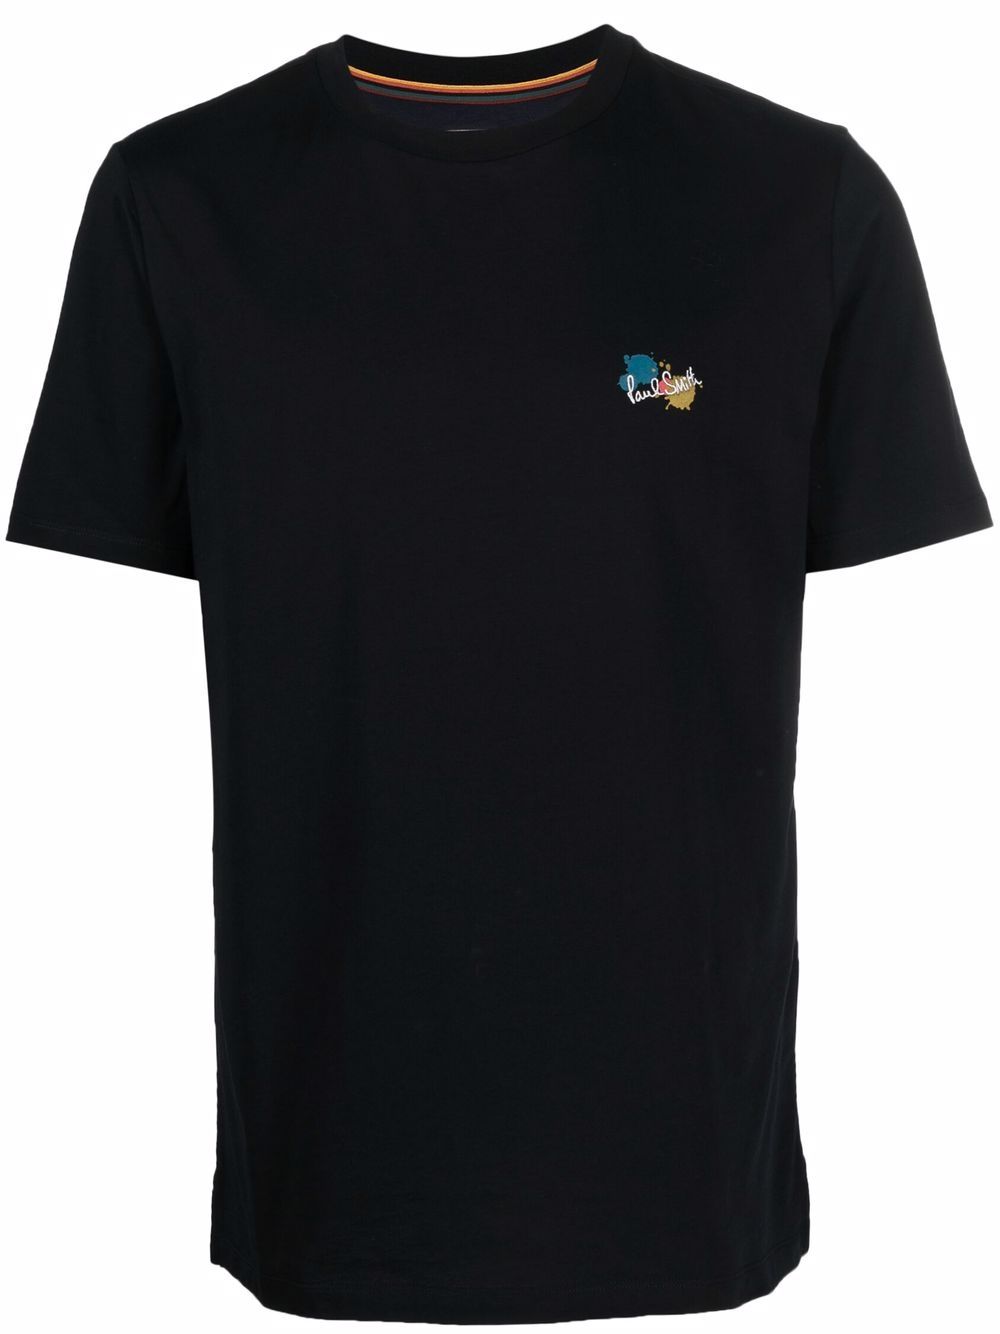 폴스미스 남성 embroidered-logo cotton T-shirt - Black M1R697PHP3094